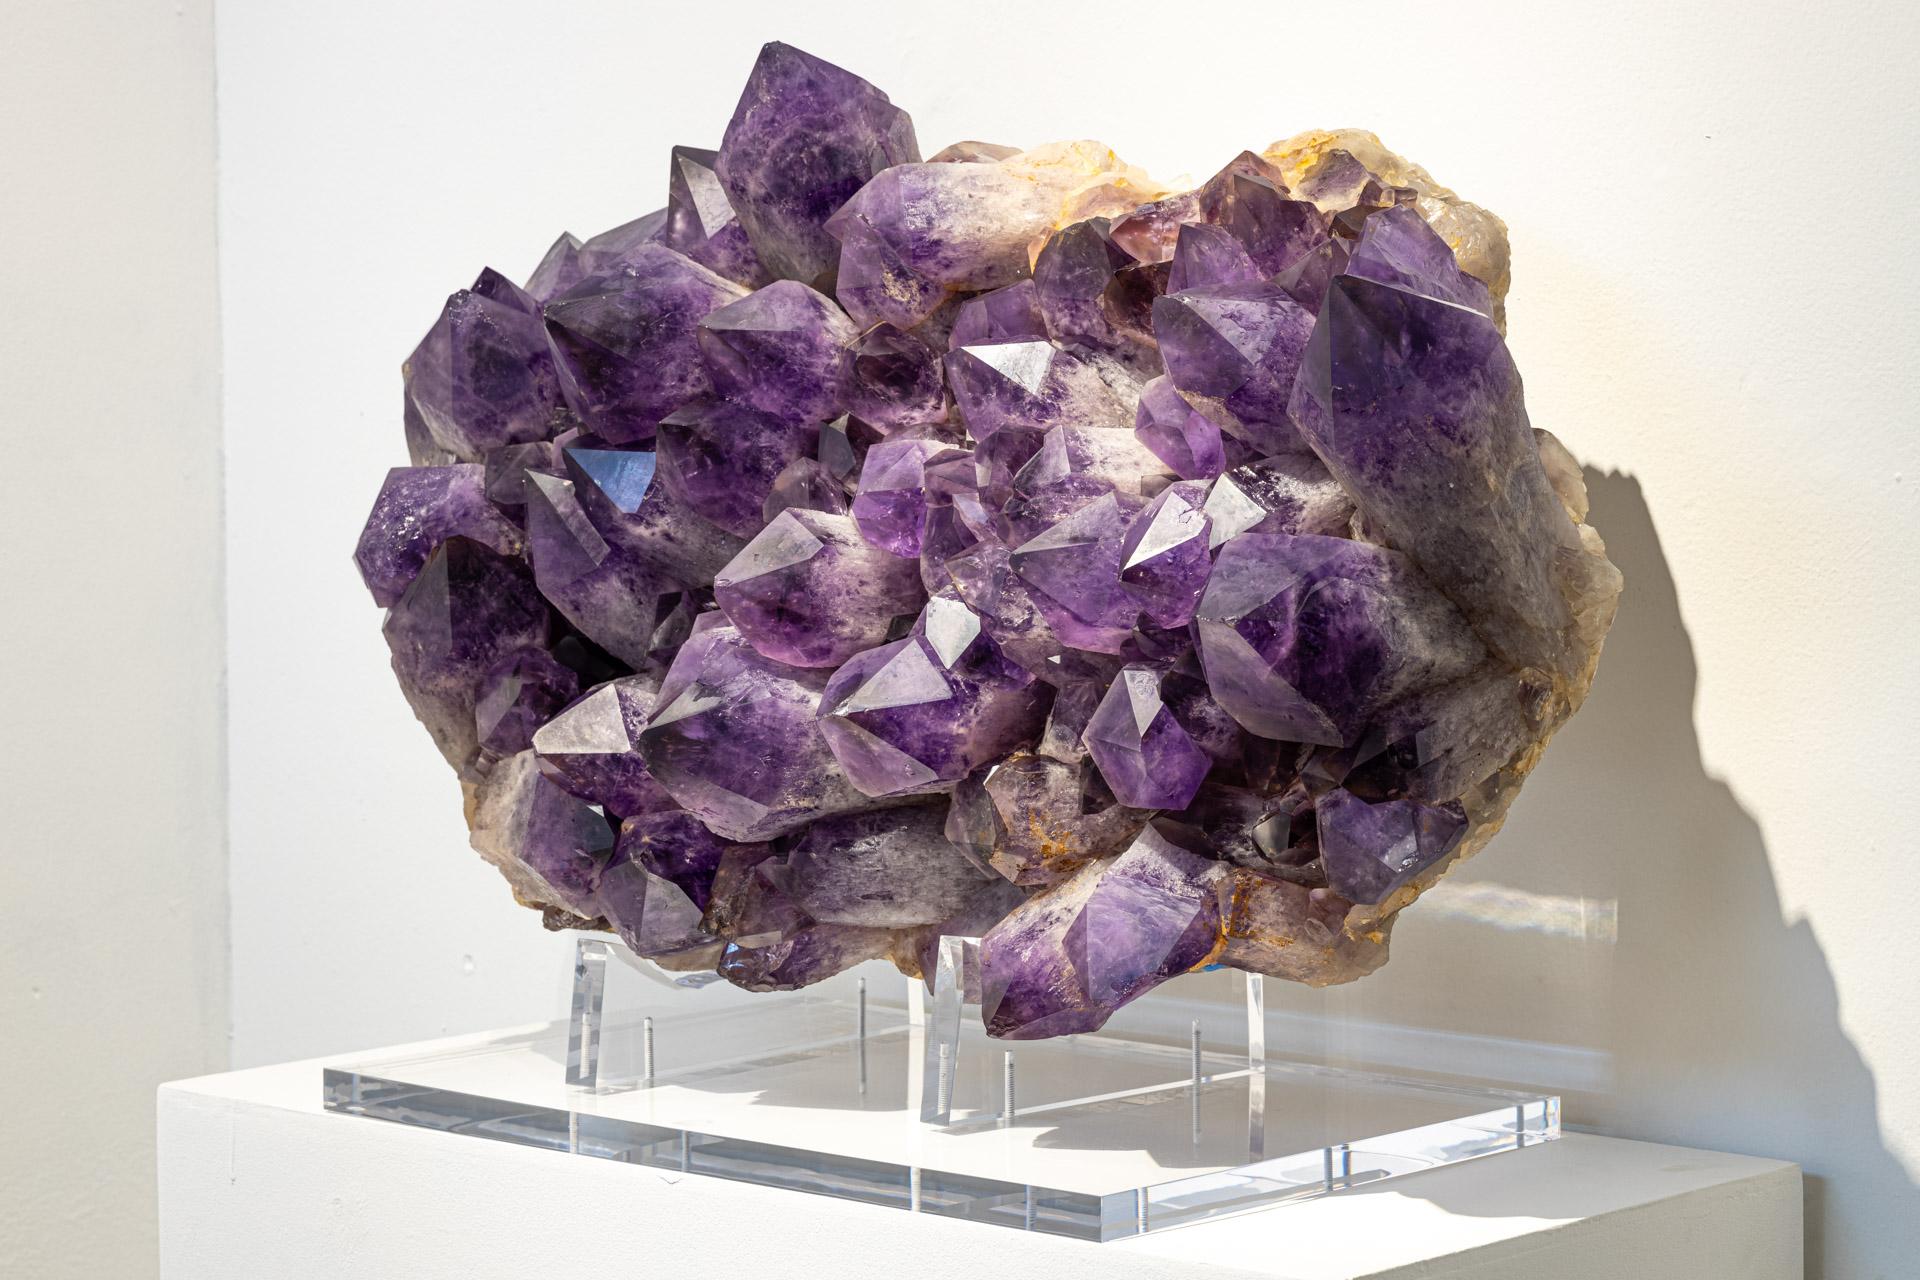 Ursprünglich: Uruguay
Ein natürlicher Amethyst mit großen Kristallen, montiert auf einem Sockel aus Acryl